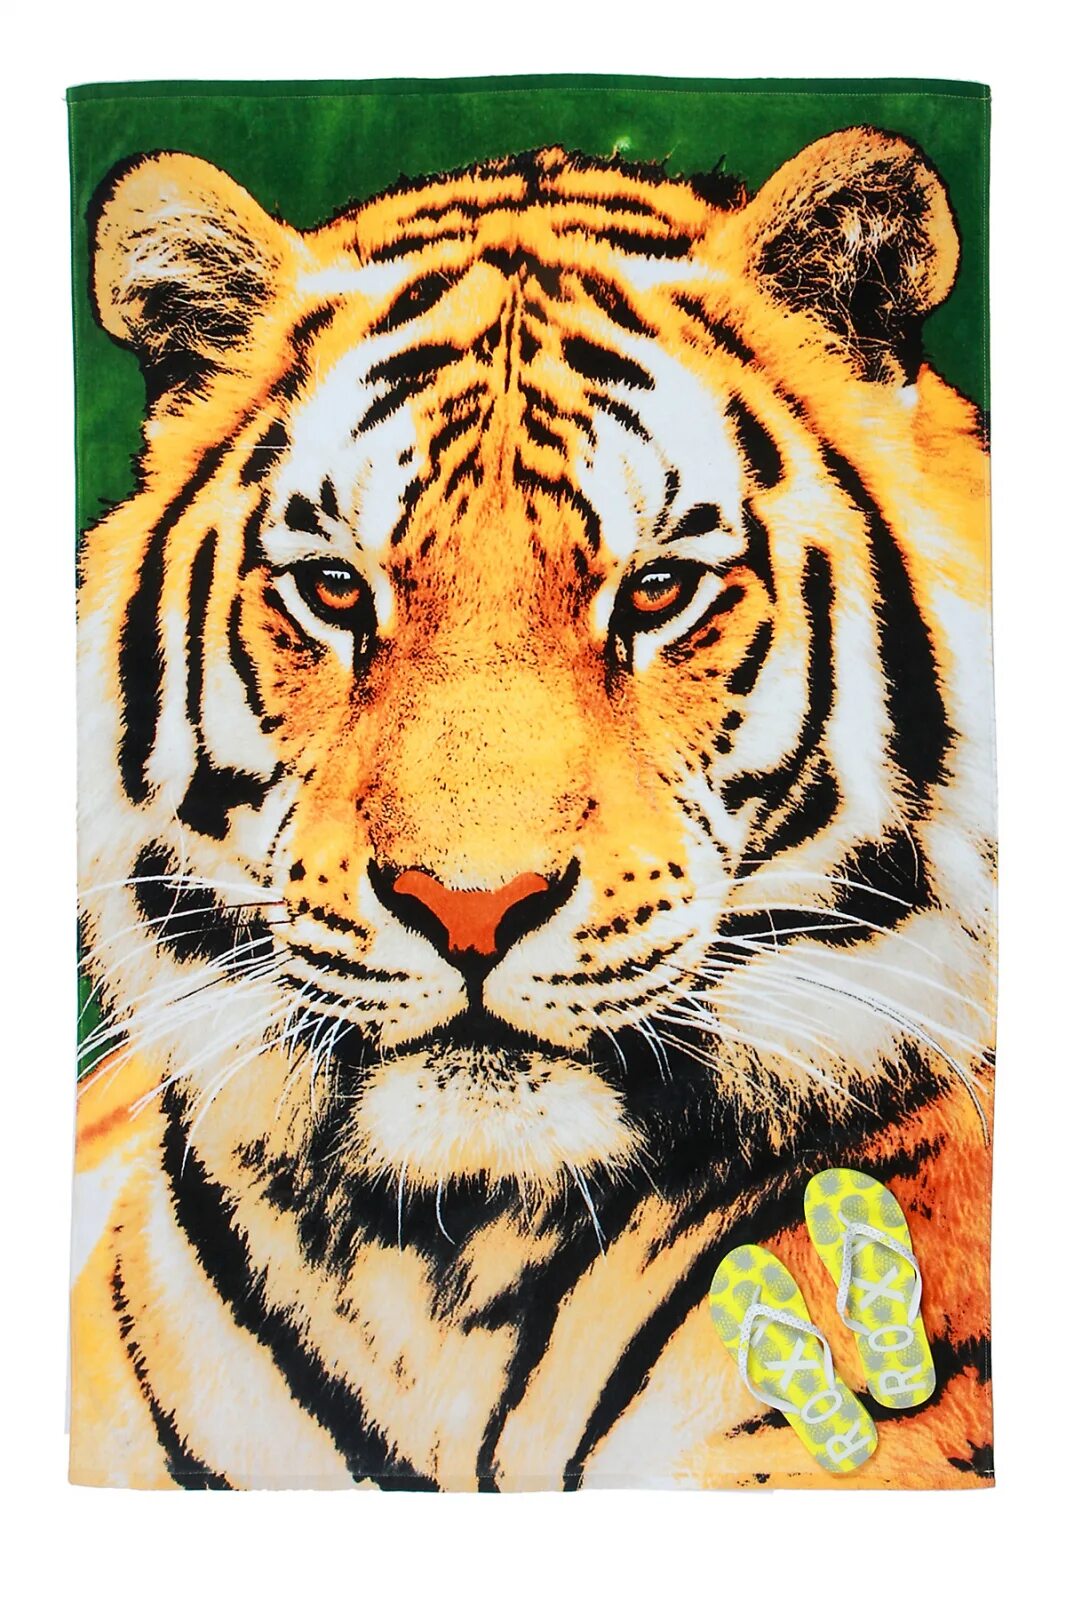 Полотенце с тиграми. Полотенце пляжное тигр. Полотенце махровое "тигры". Полотенце вафельное с тигром. Полотенце банное с тигром.